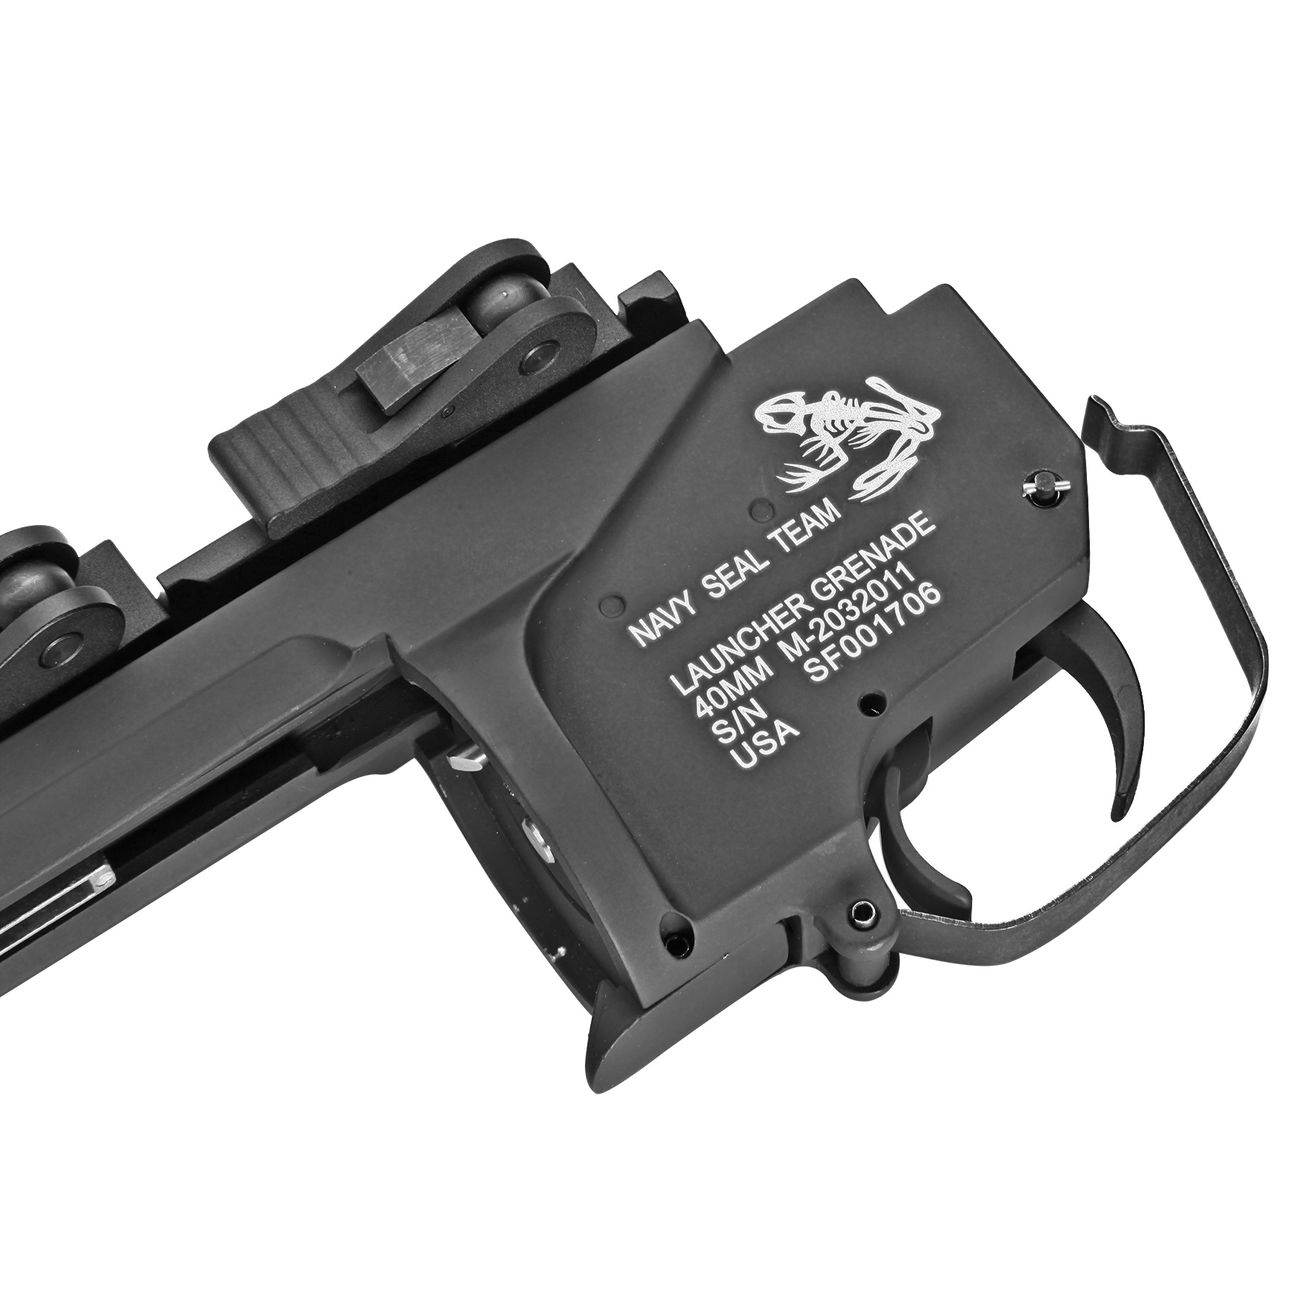 G&P Skull Frog QD M203 40mm Granatwerfer f. 20 - 22mm Schienen XShort-Type schwarz Bild 1